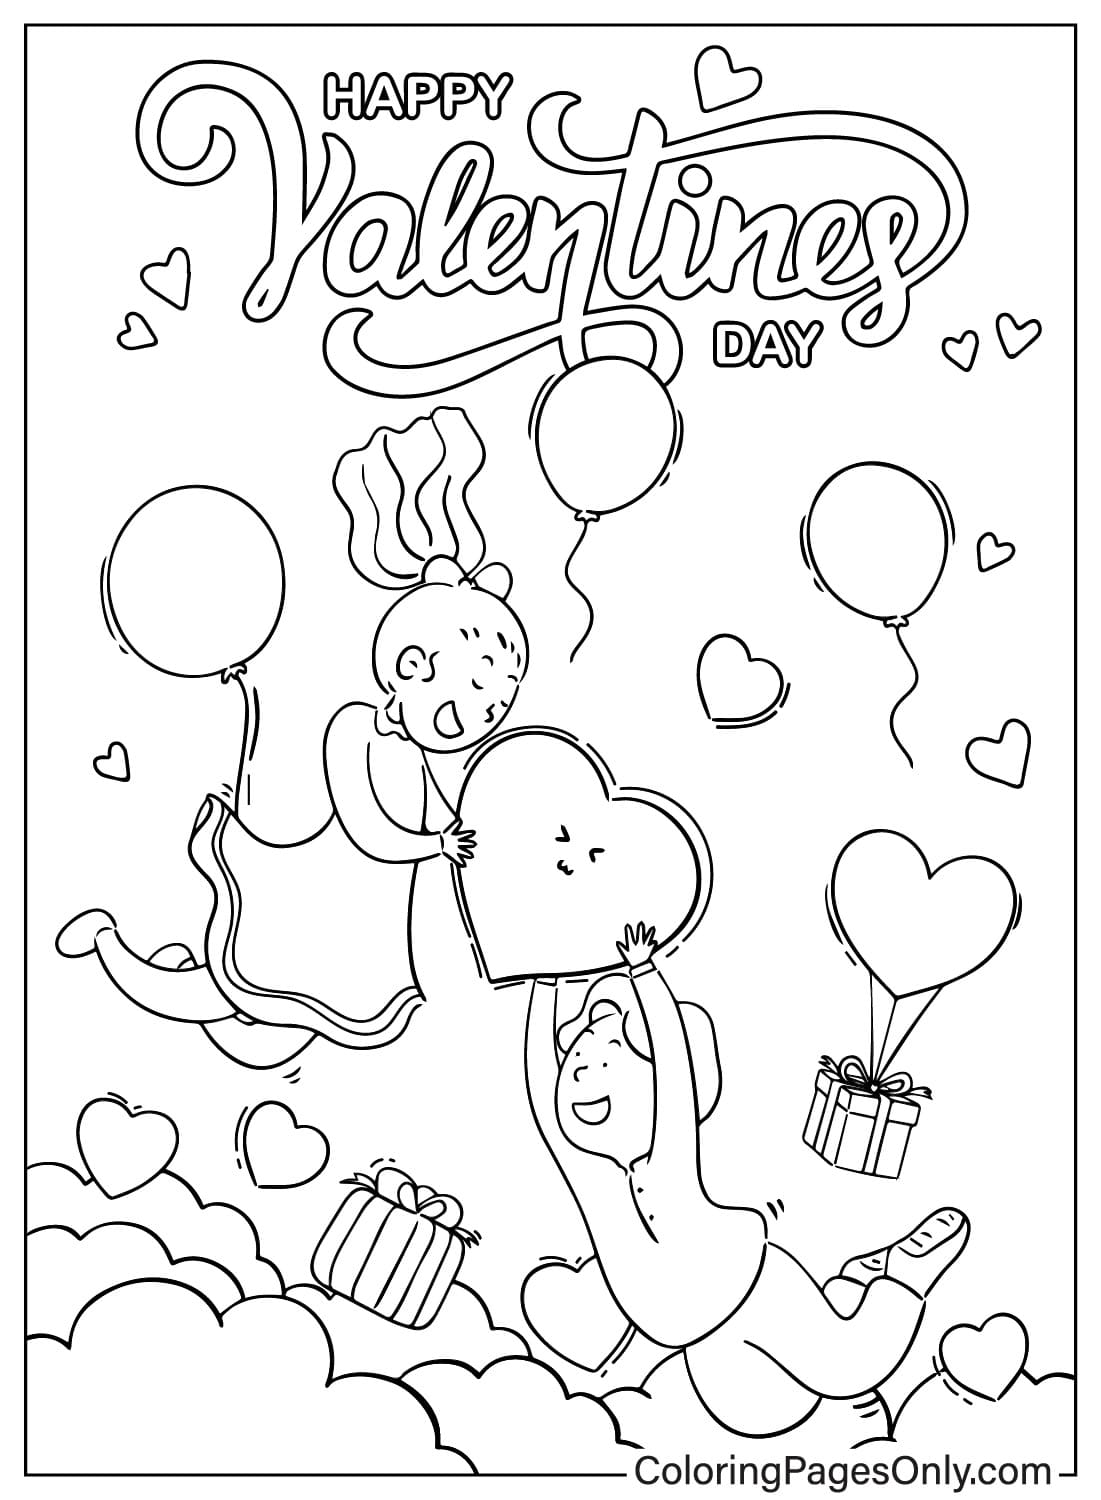 Happy Valentines Day kleurplaat van Valentijnsdag